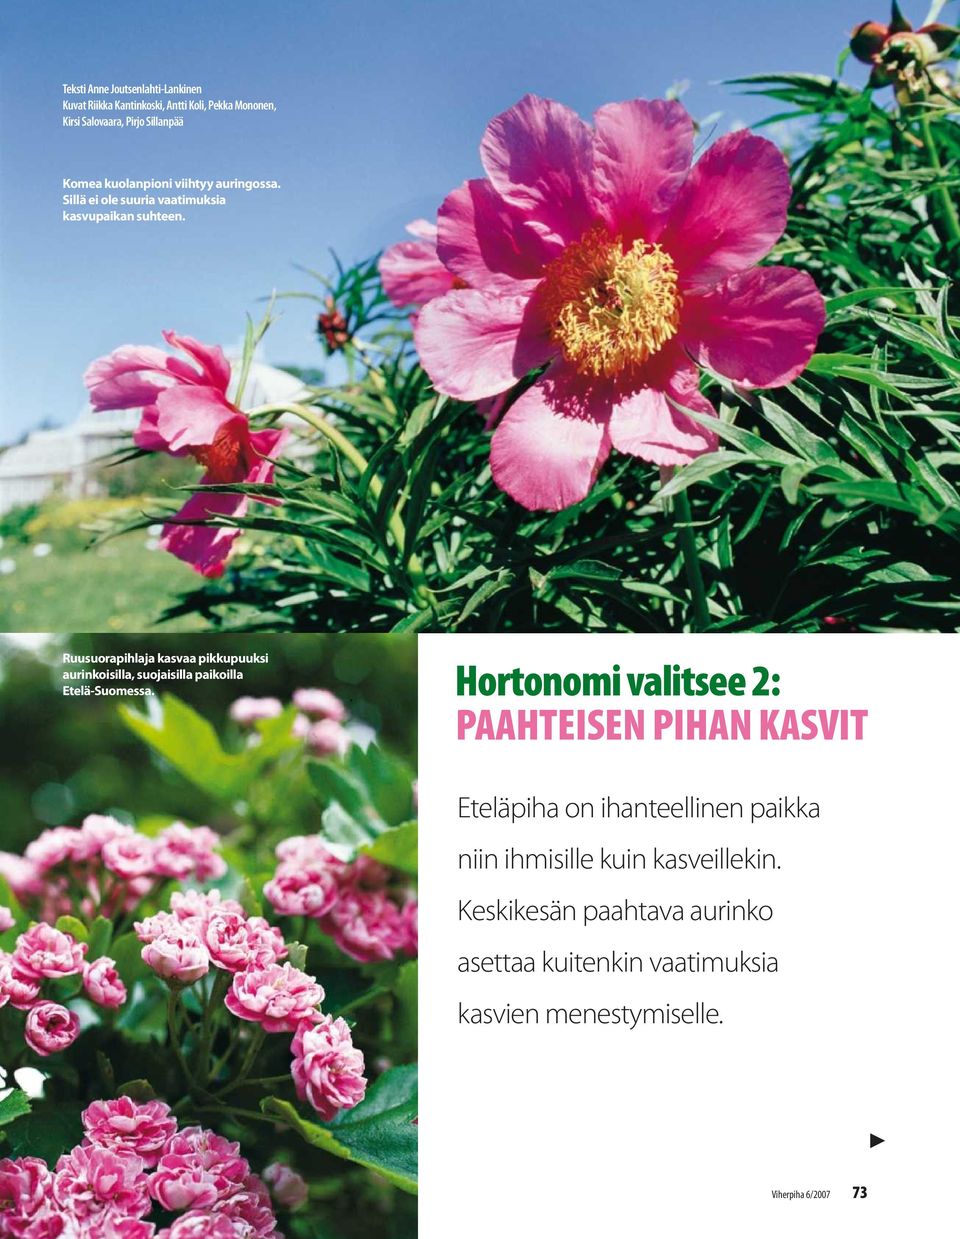 Ruusuorapihlaja kasvaa pikkupuuksi aurinkoisilla, suojaisilla paikoilla Etelä-Suomessa.